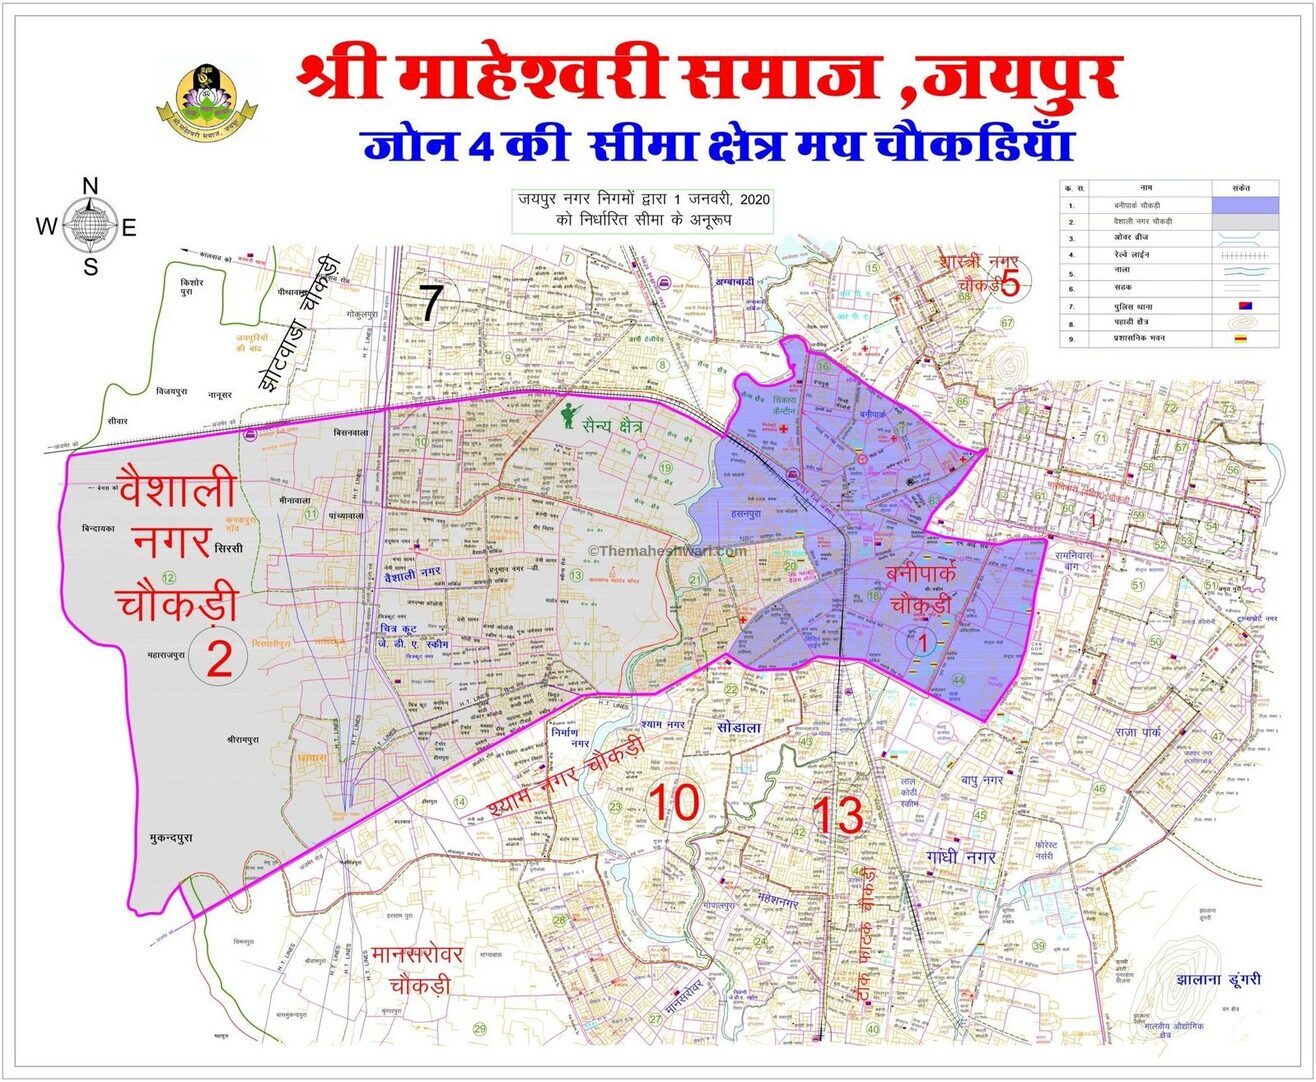 Shri Maheshwari Samaj Jaipur-Zone 4